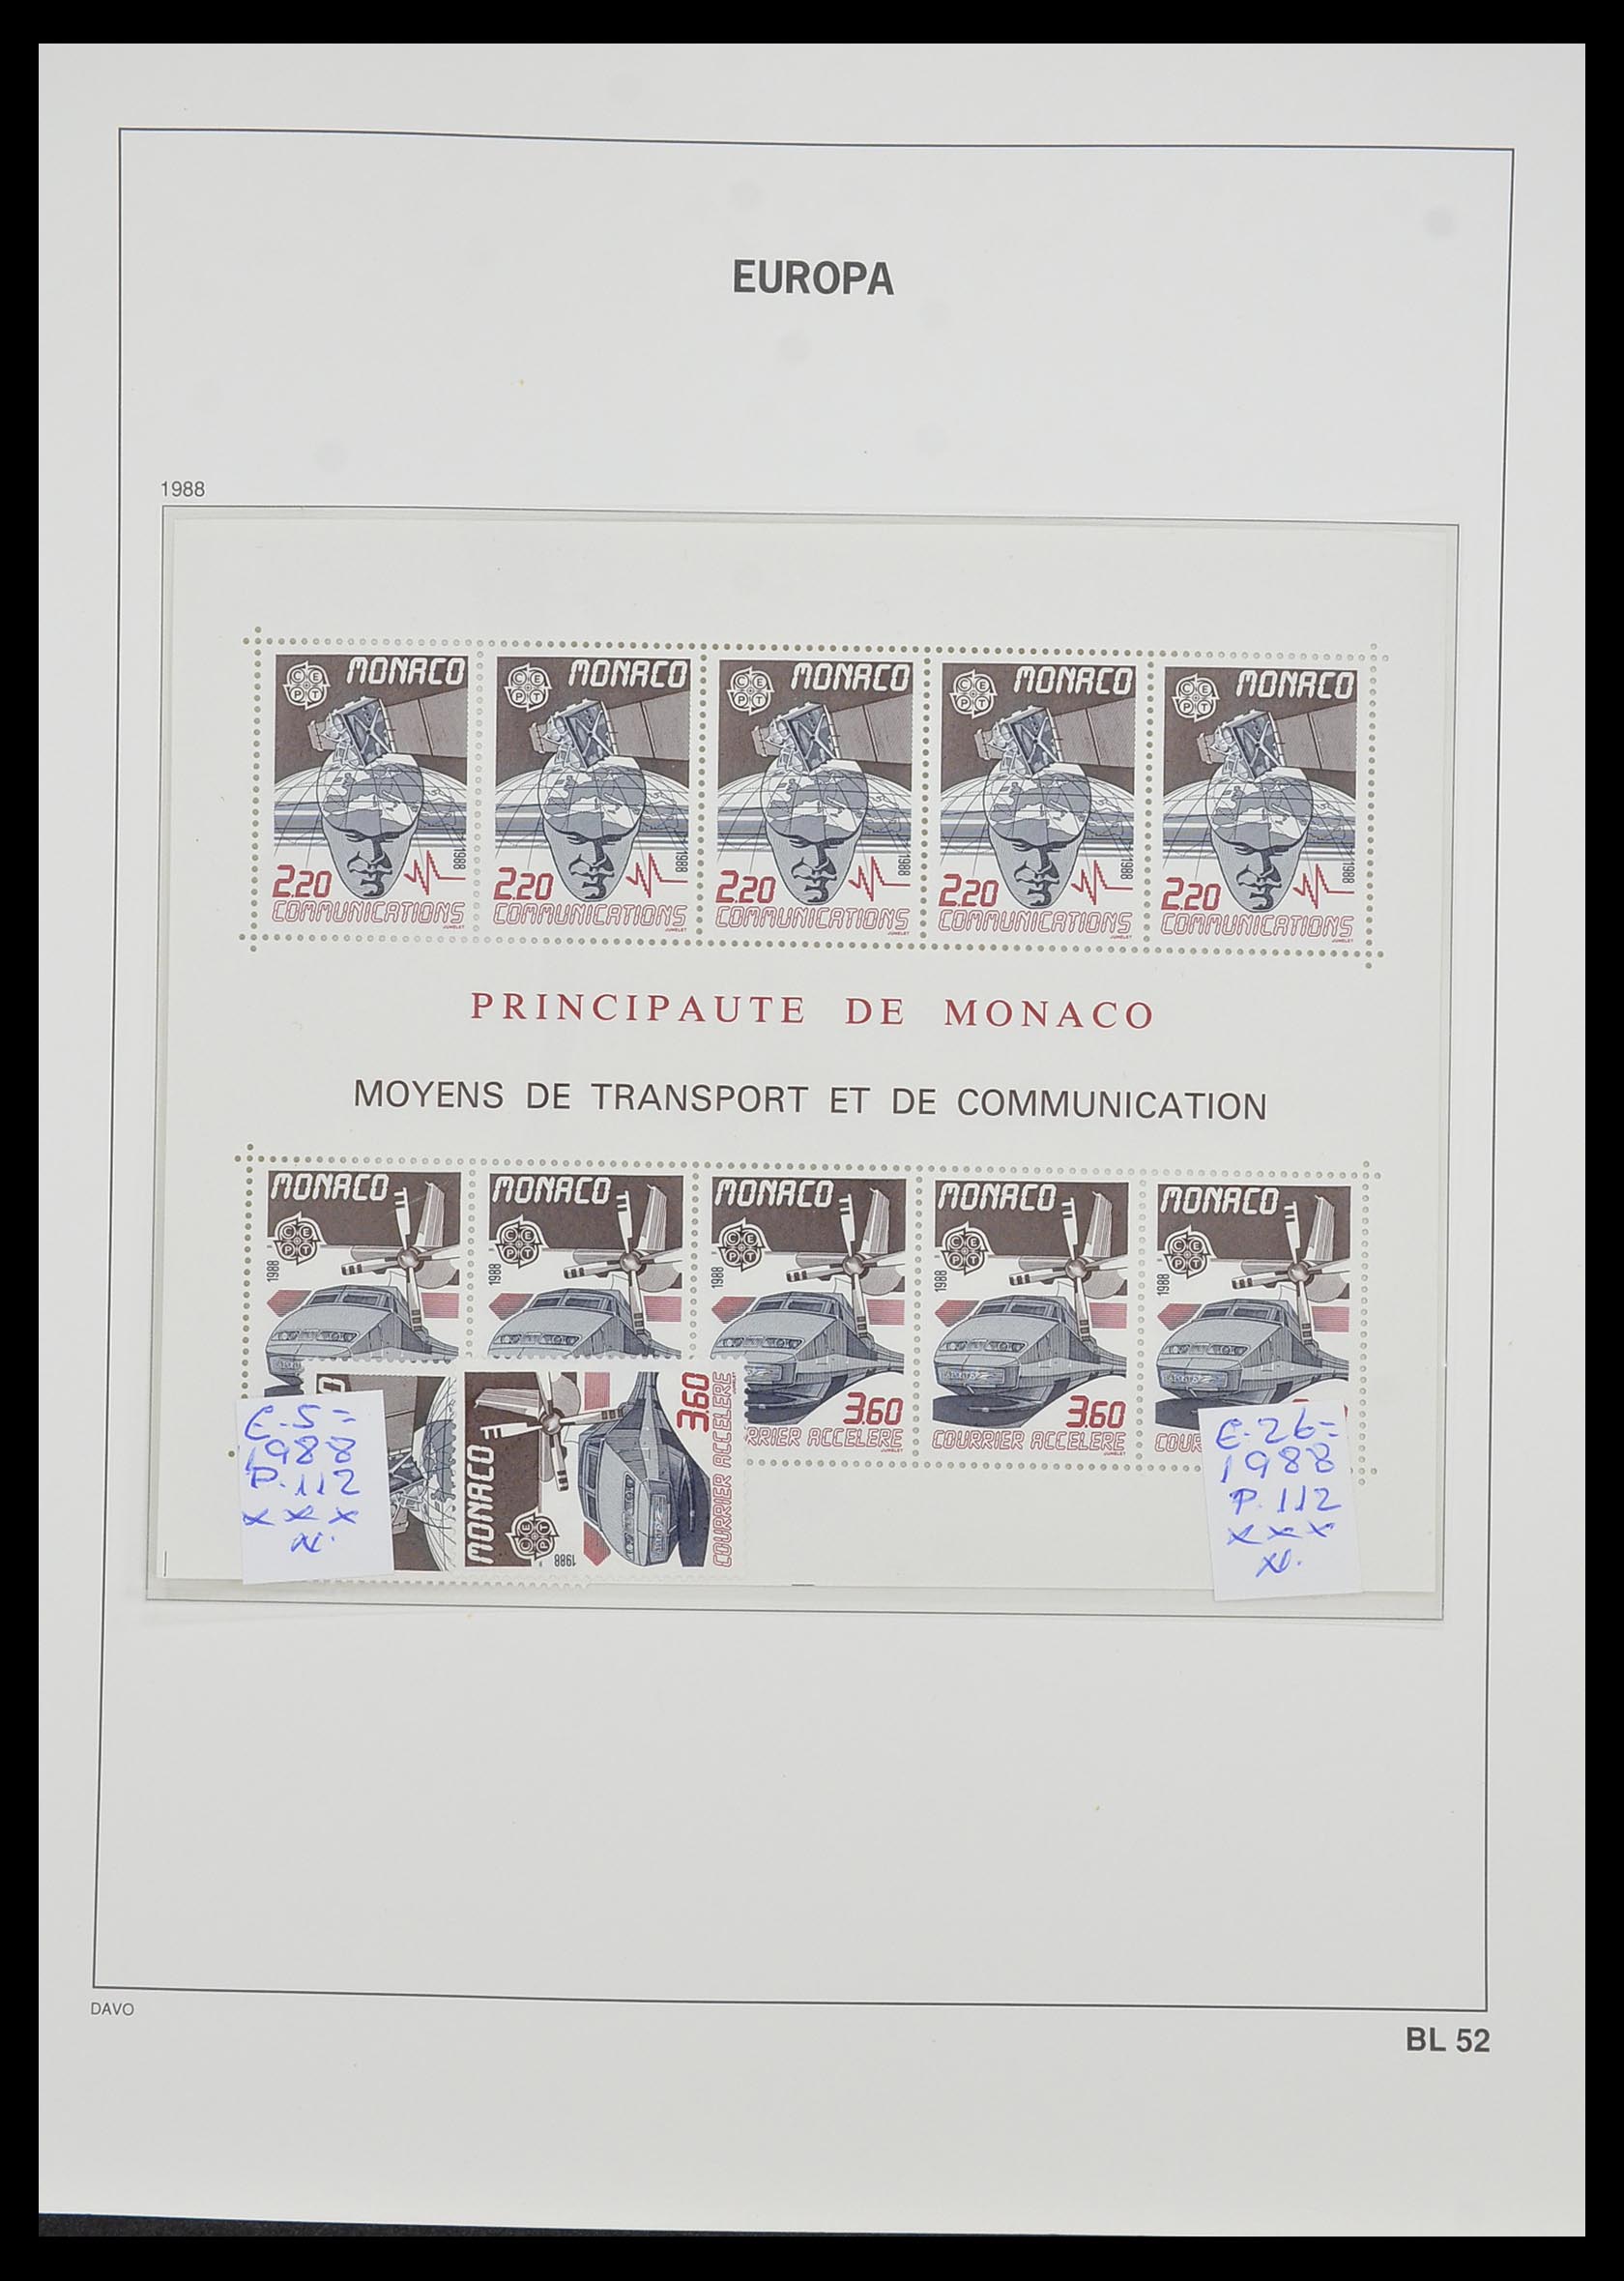 33985 052 - Stamp collection 33985 Europa CEPT souvenir sheets 1974-2014.